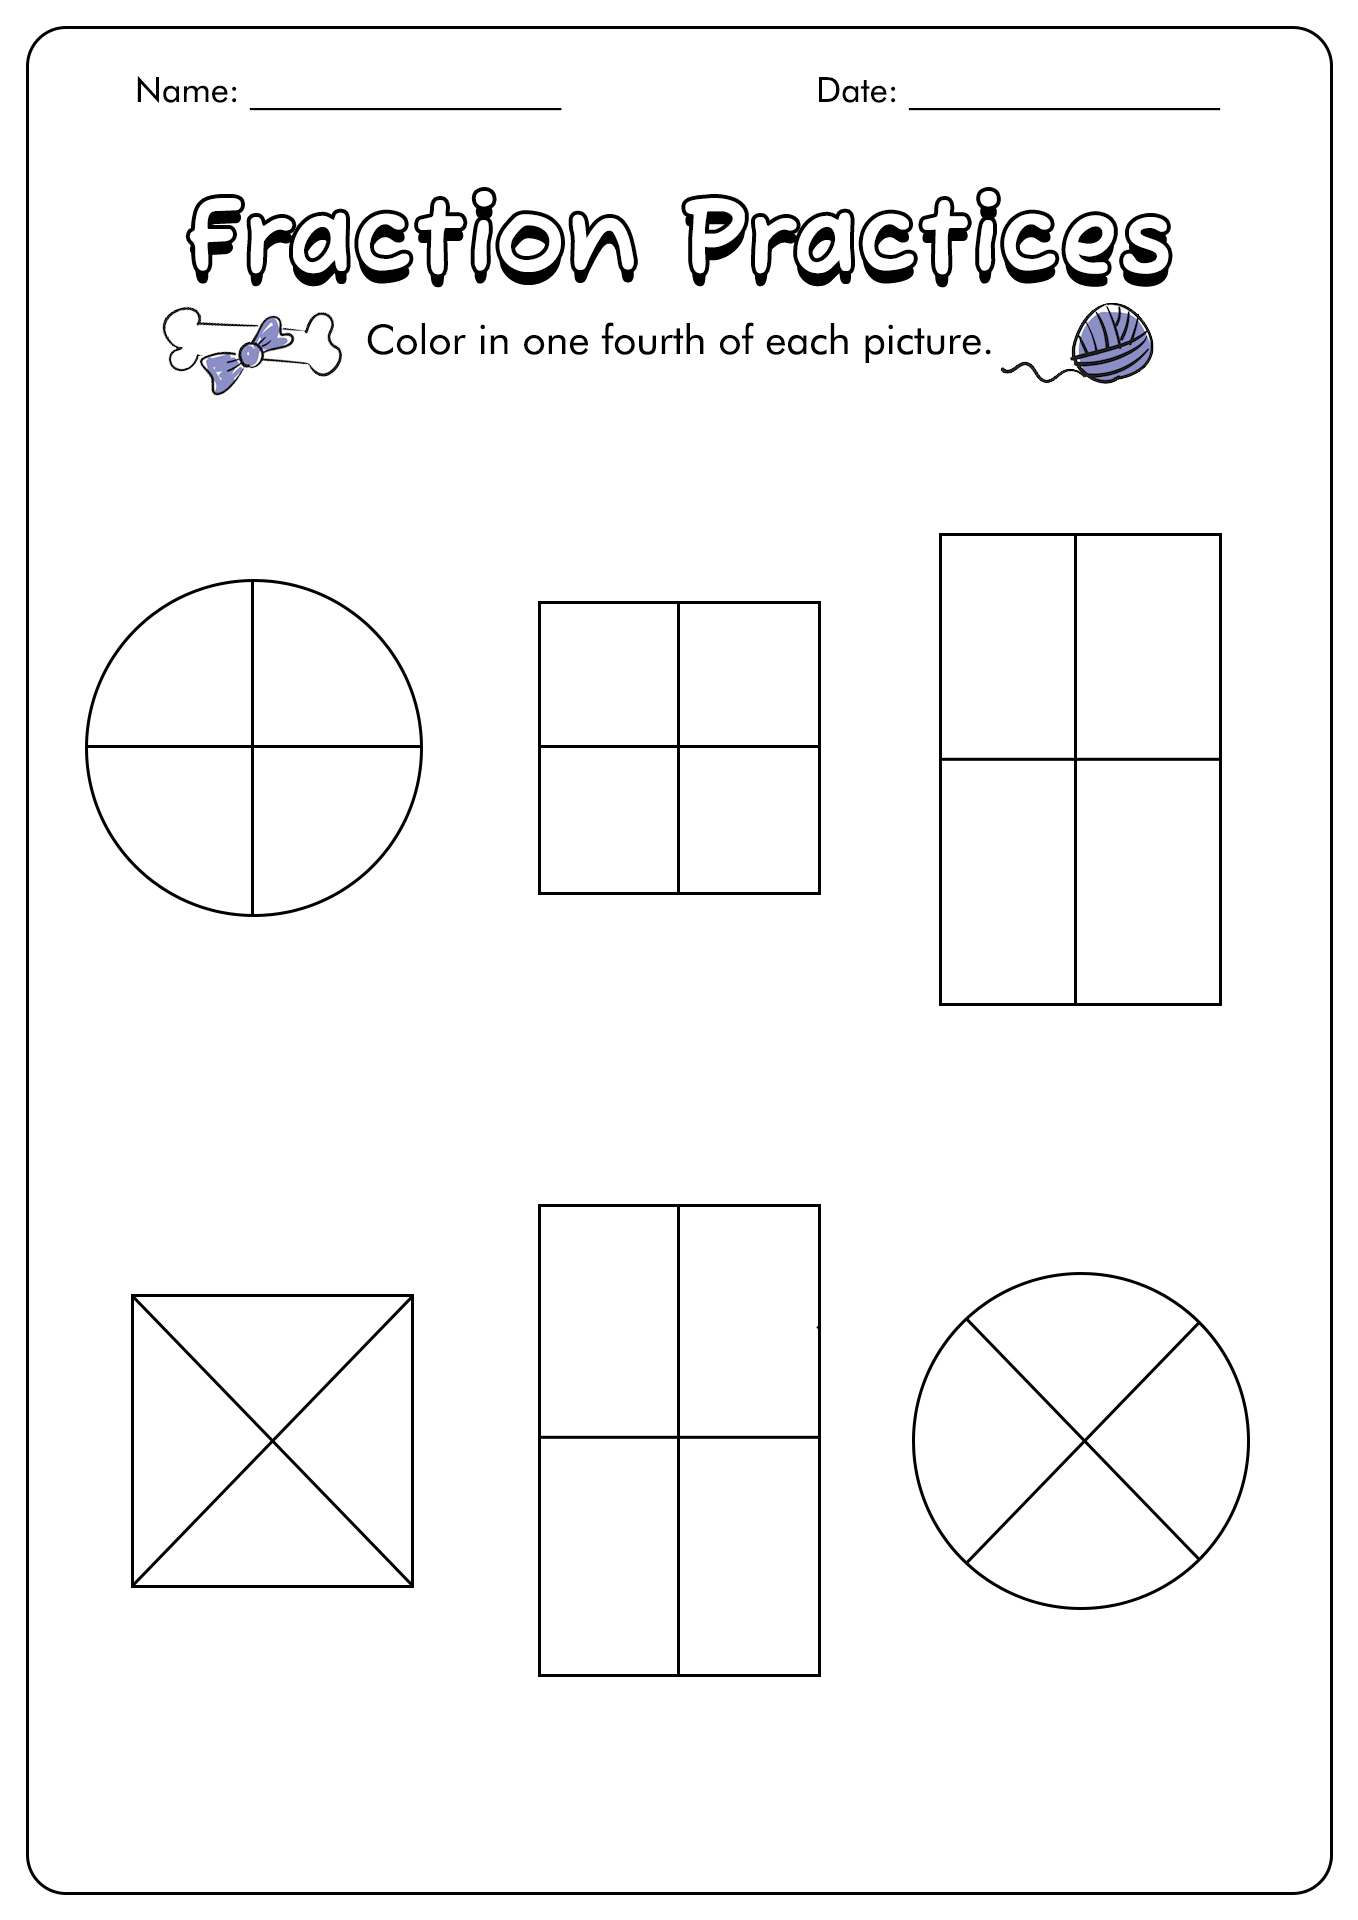 fractions-quiz-fractions-1st-grade-math-worksheets-1st-grade-worksheets